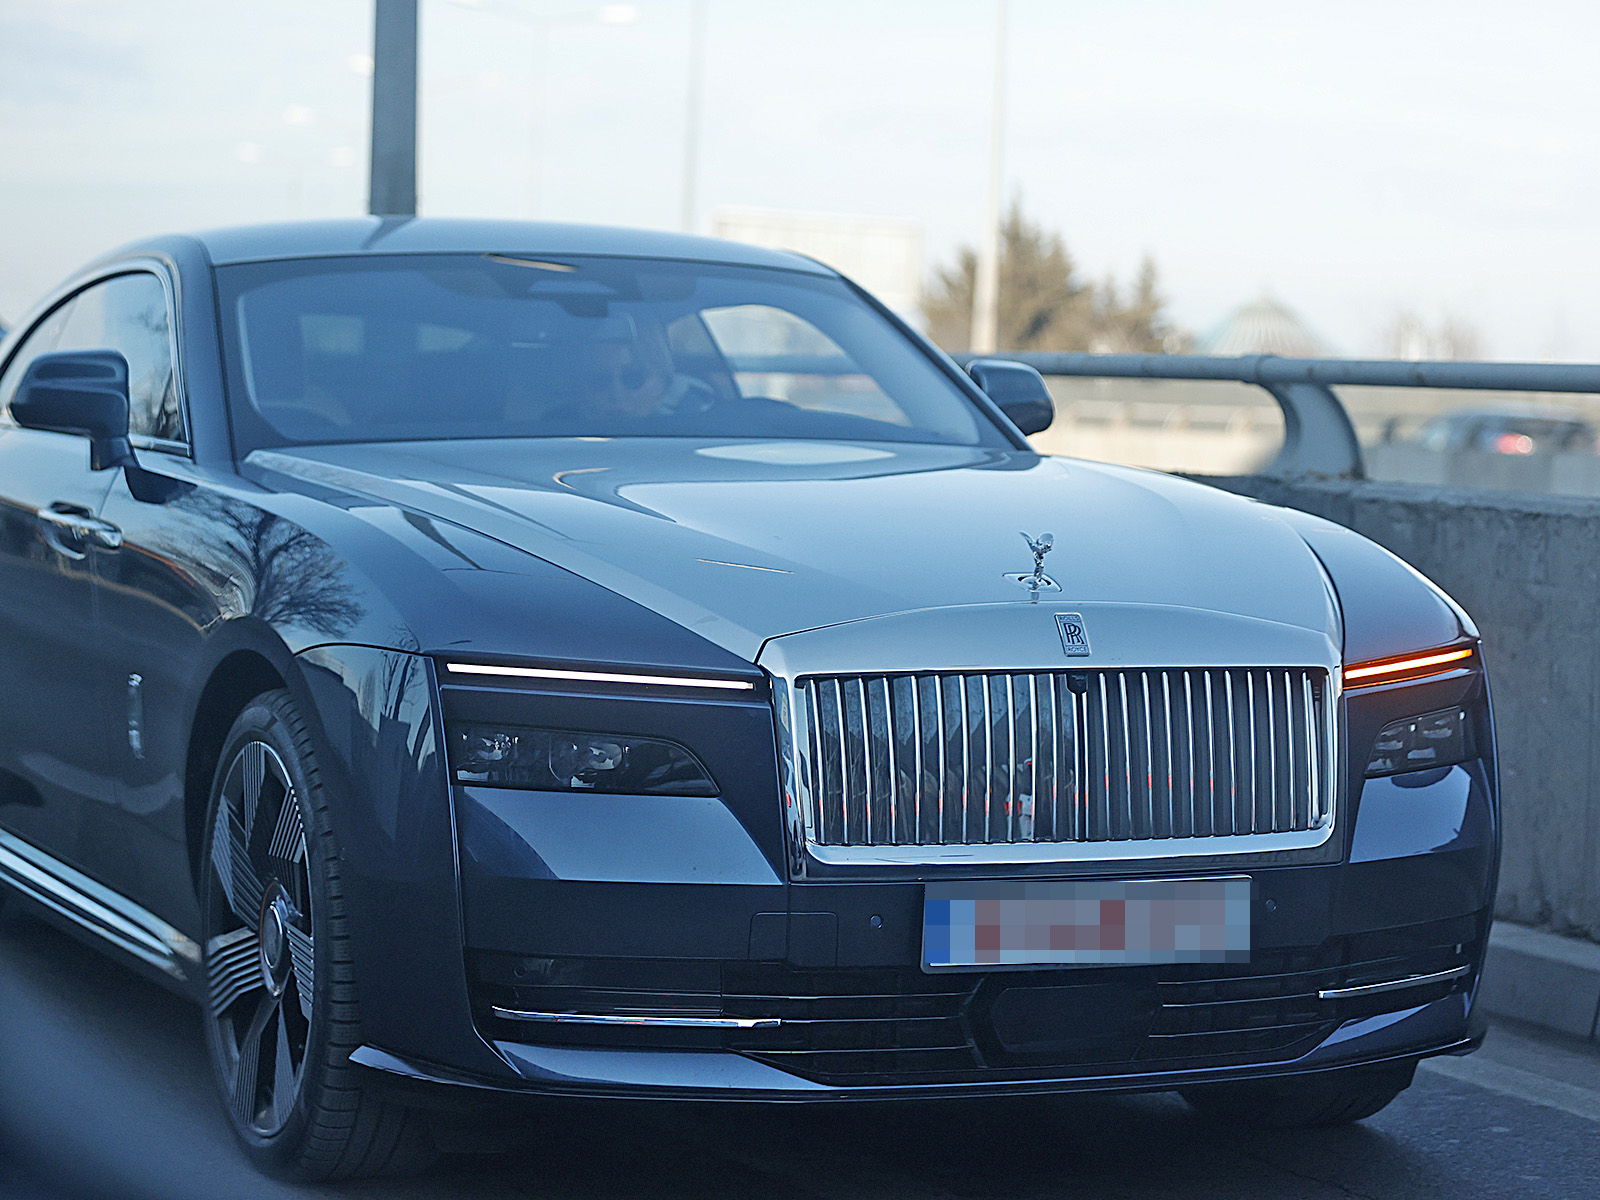 Doamna Purcari conduce al doilea Rolls Royce Spectre din România